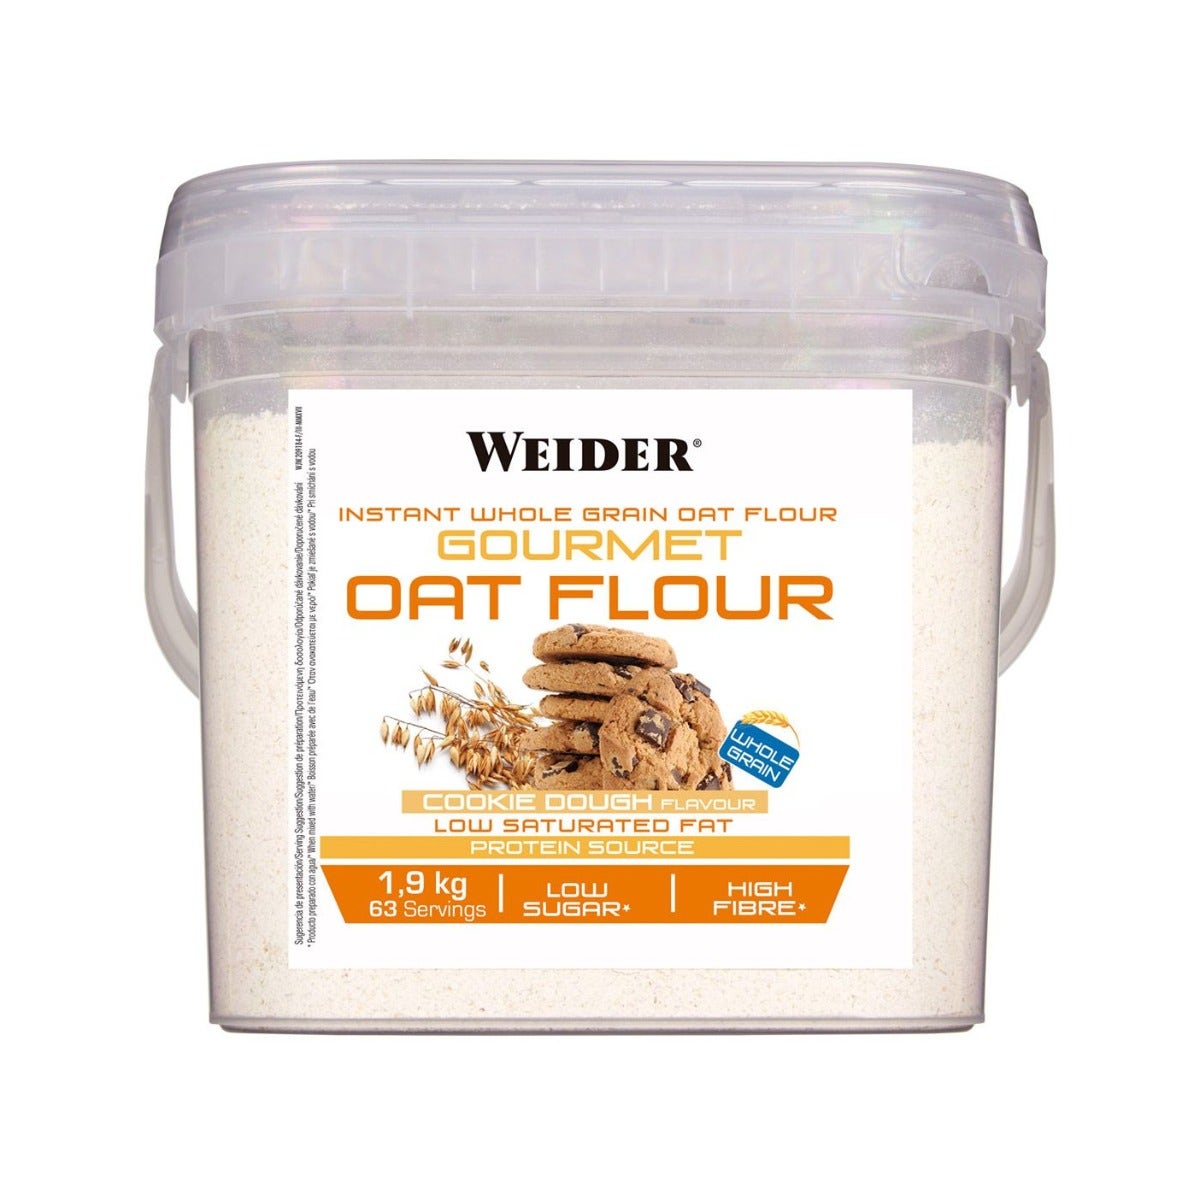 weider nutrition sl weider oat flour farina di avena gusto biscotto secchio 1,9kg, oro